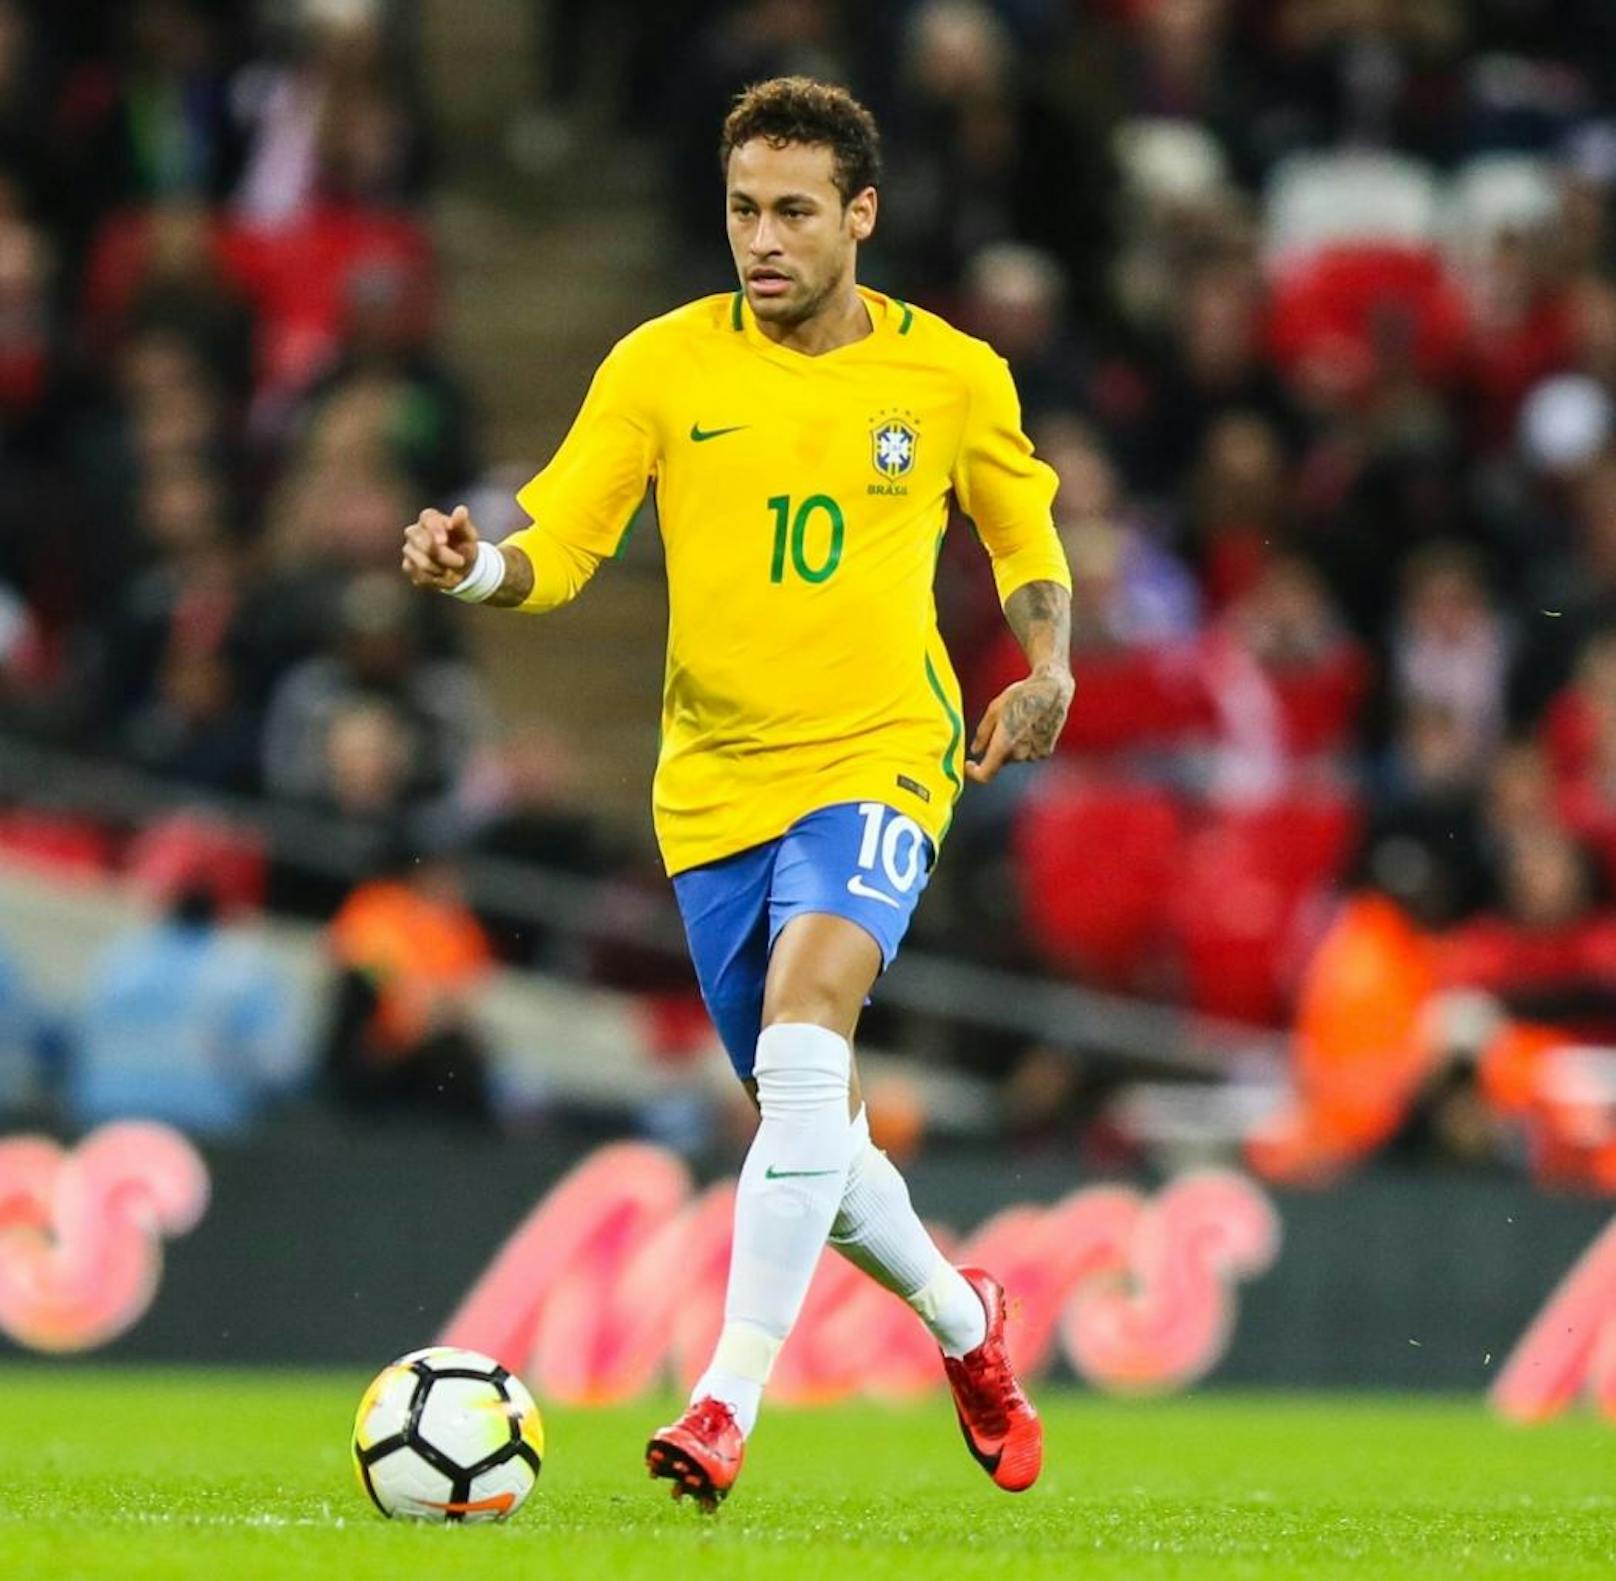 Neymar - Brasilien: Der PSG-Star hat den Schock von der Heim-WM verdaut. Beim Turnier in der Heimat wurde Neymar im Viertelfinale gegen Kolumbien von Juan Zuniga ein Lendenwirbel gebrochen. Damit war das Heim-Turnier beendet. Wenig später auch für Brasilien, das im Halbfinale gegen Deutschland mit 1:7 baden ging. Die "Selecao" ist auf Wiedergutmachung aus.